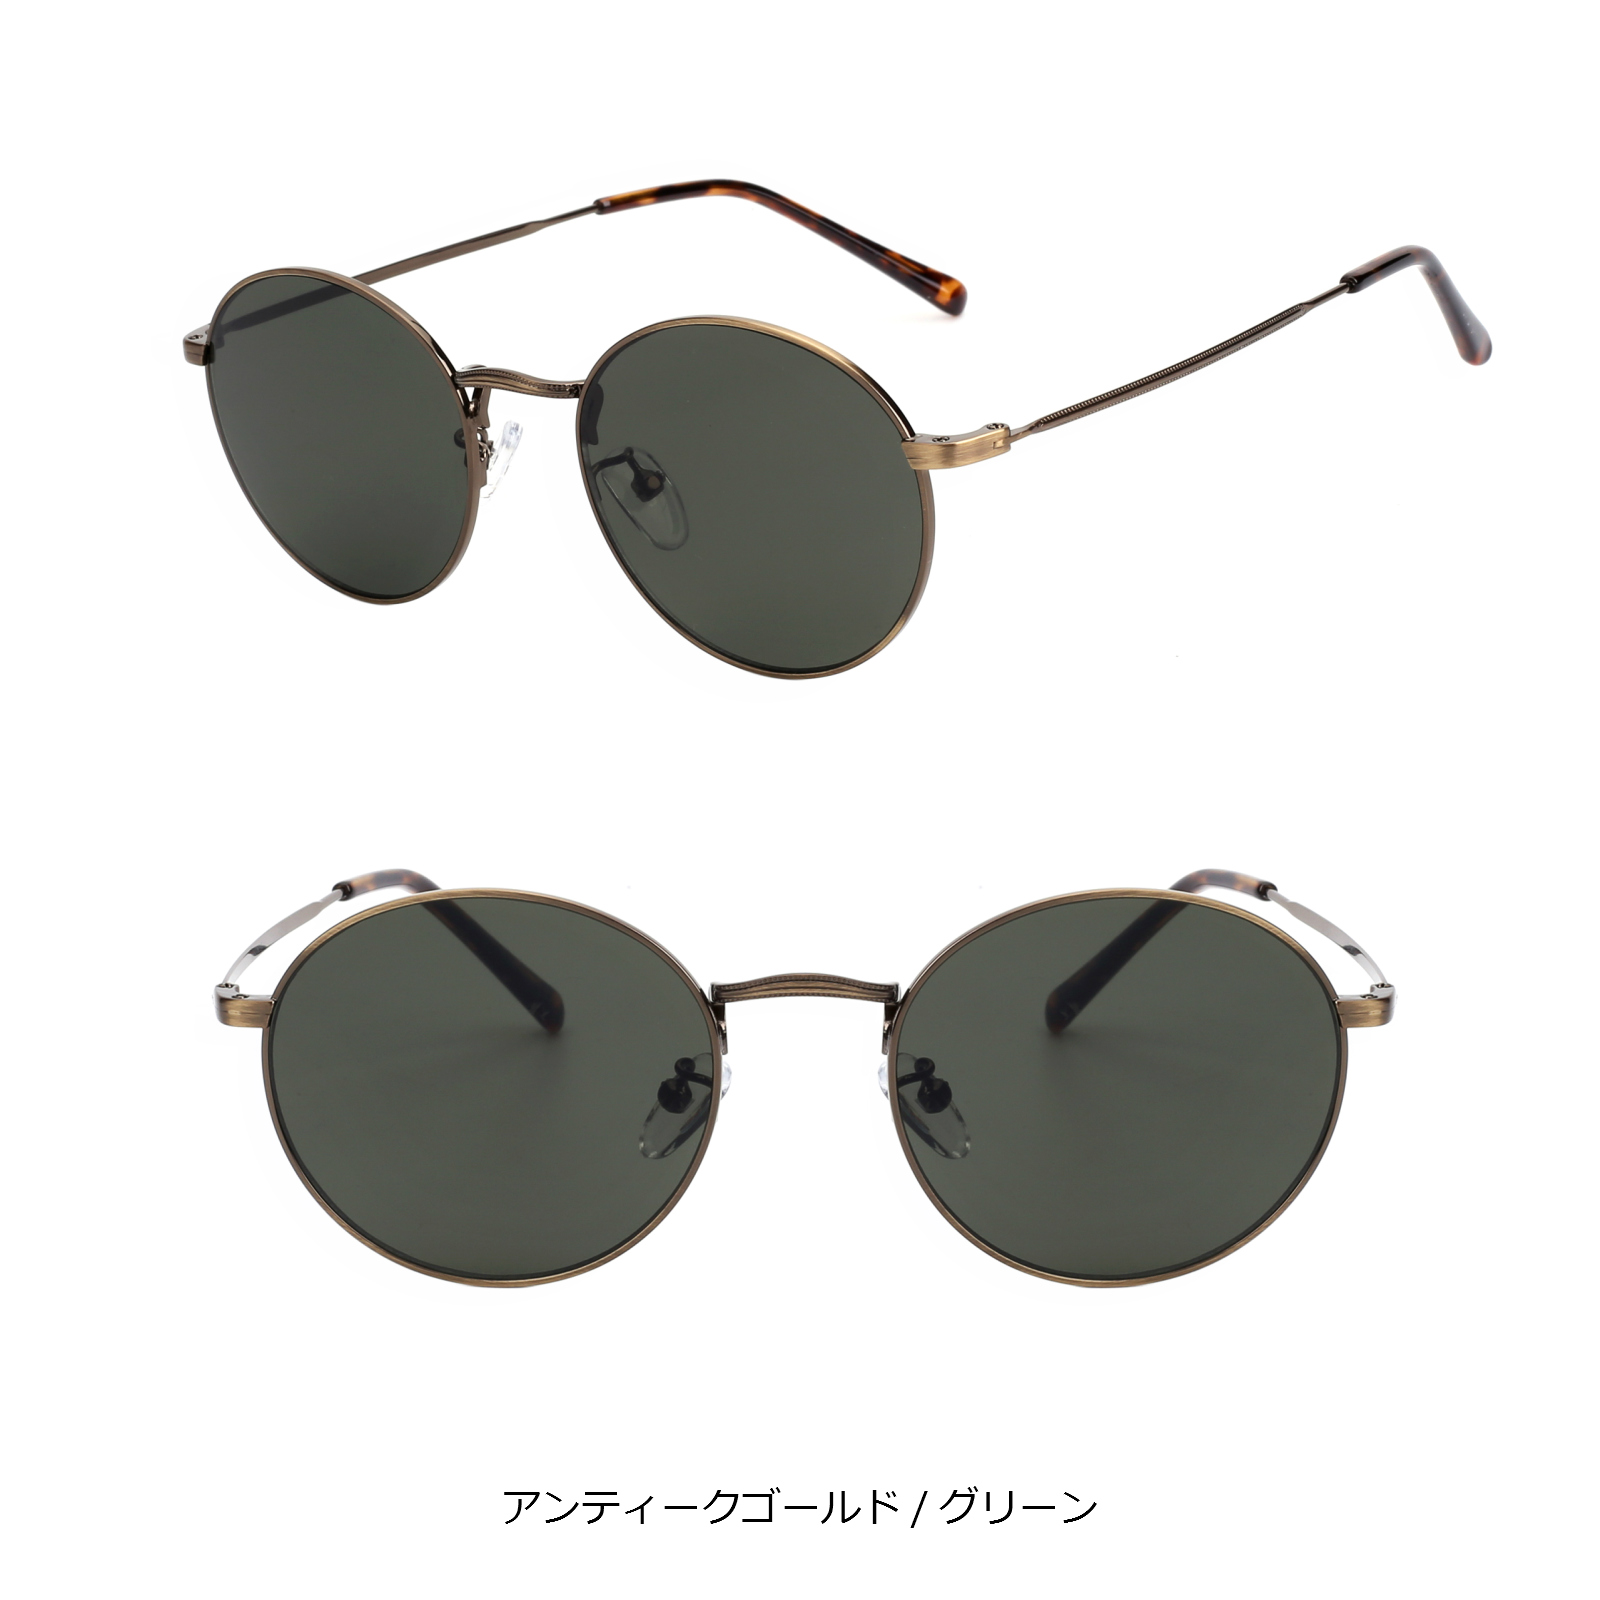 598円 【初売り】 サングラス 丸メタルフレームカラーサングラス